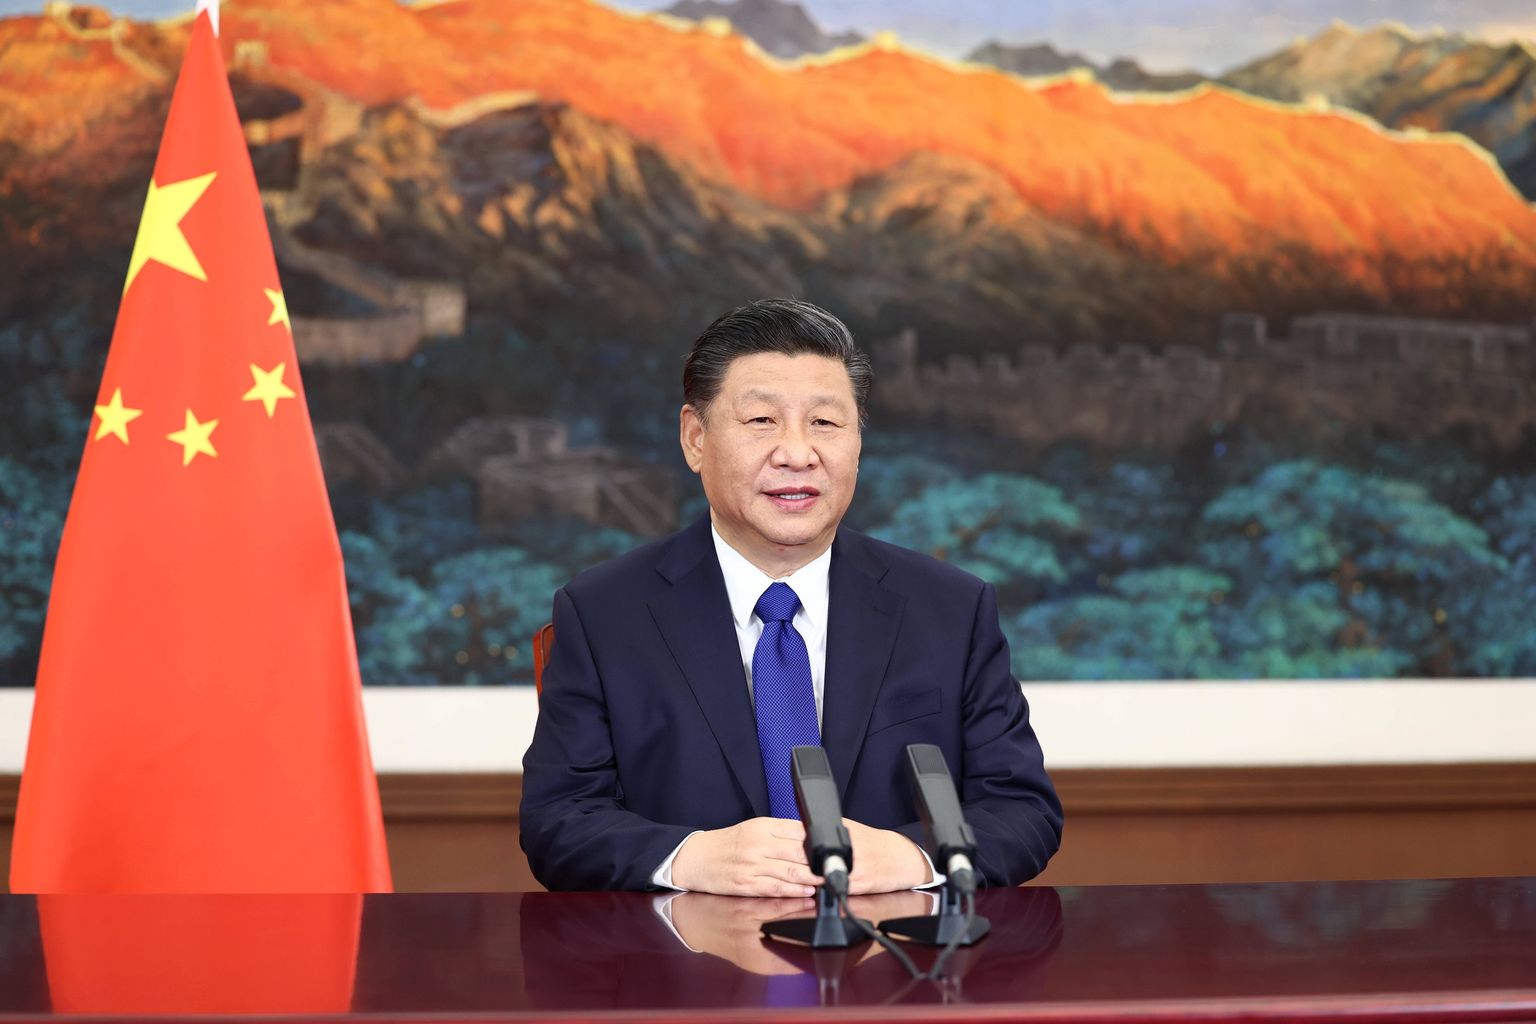 Hiina autoritaarne juht Xi Jinping.